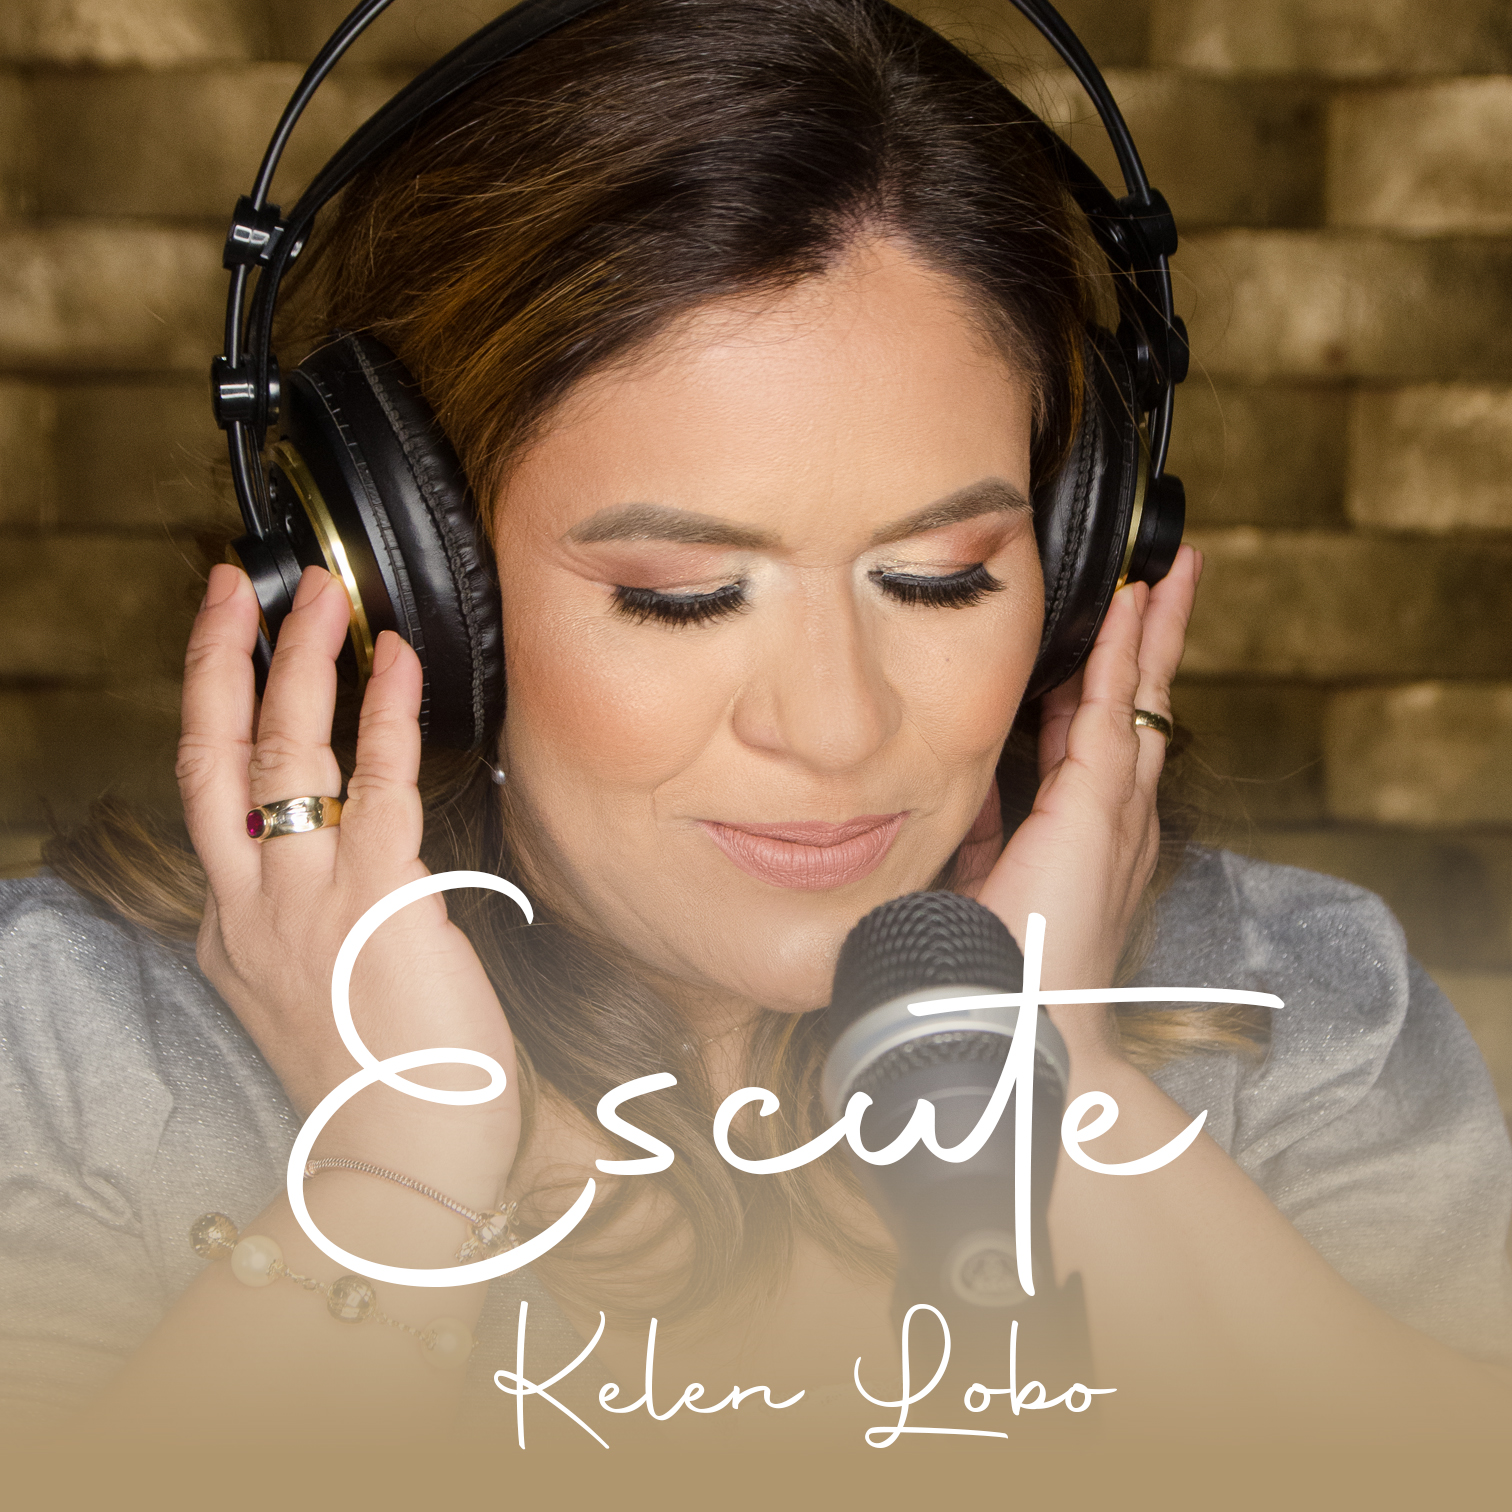 Kelen Lobo lança single “Escute” – Um convite para ouvir a voz de Deus e confiar nEle